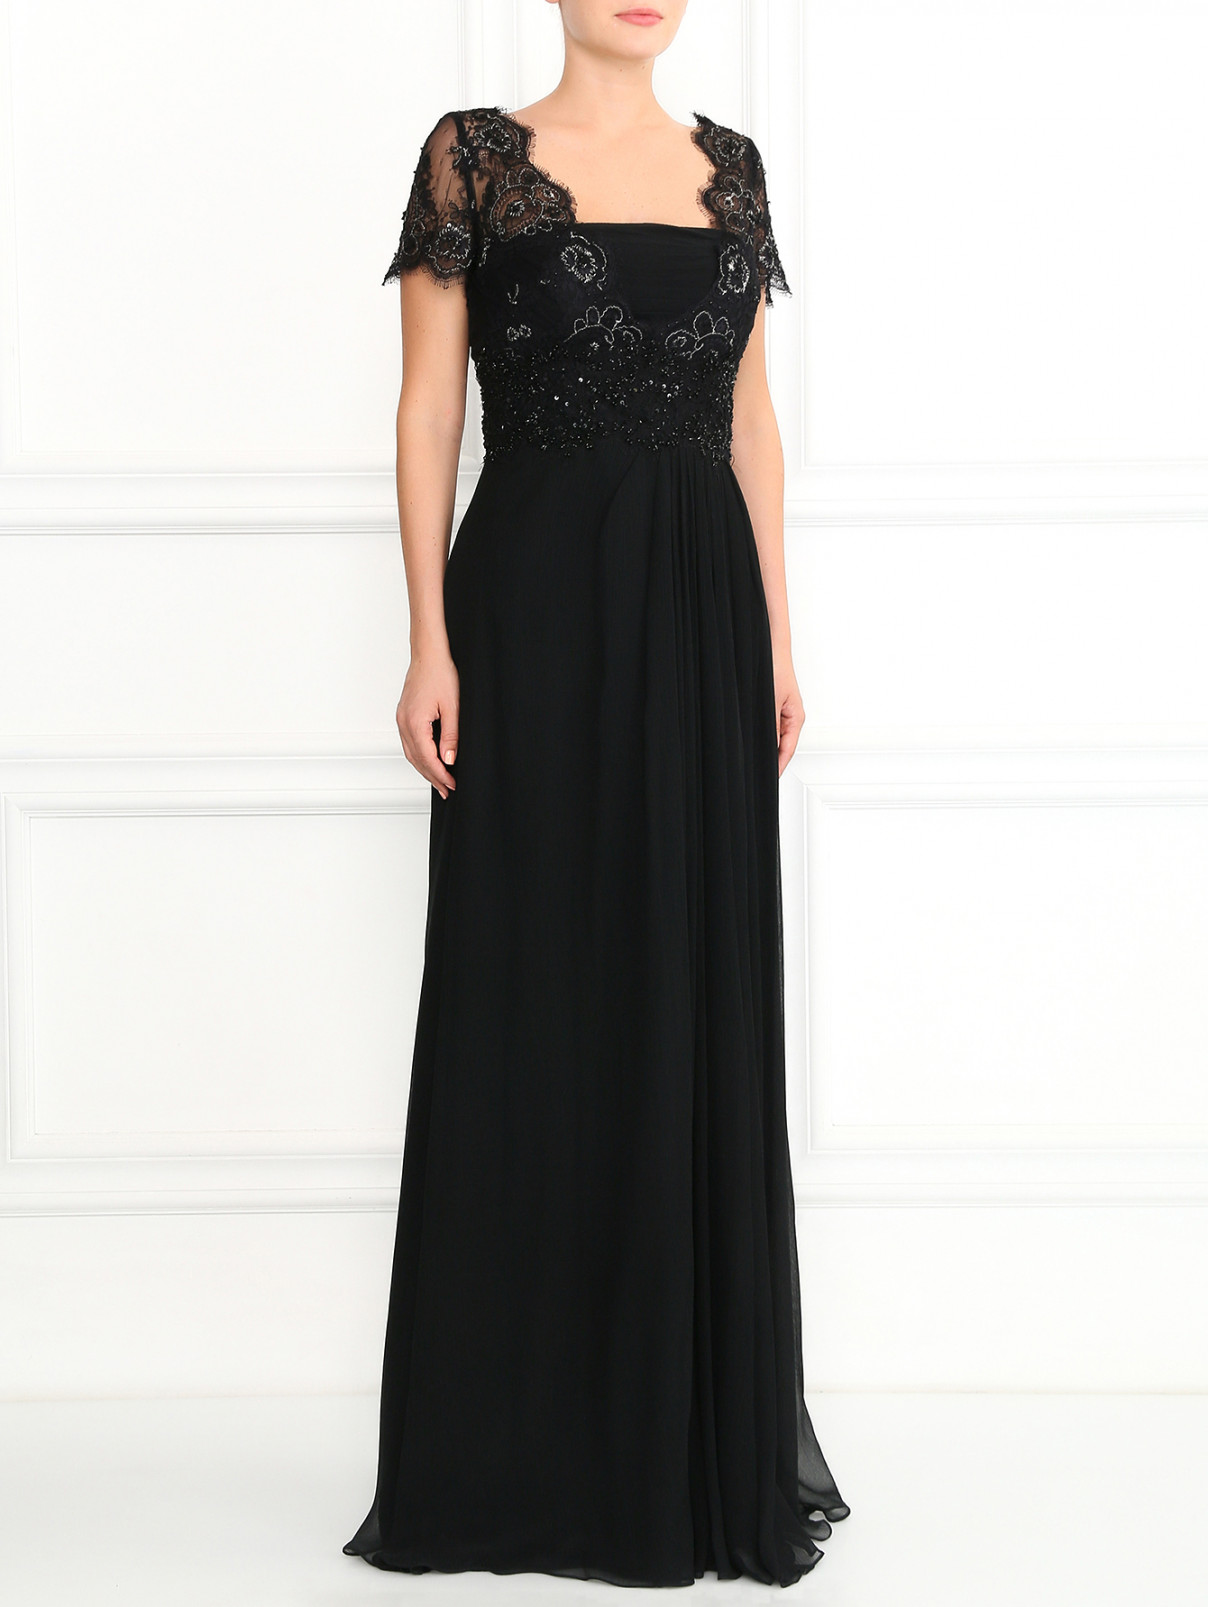 Платье-макси из шелка, декорированное кружевом и бисером Rosa Clara  –  Модель Общий вид  – Цвет:  Черный